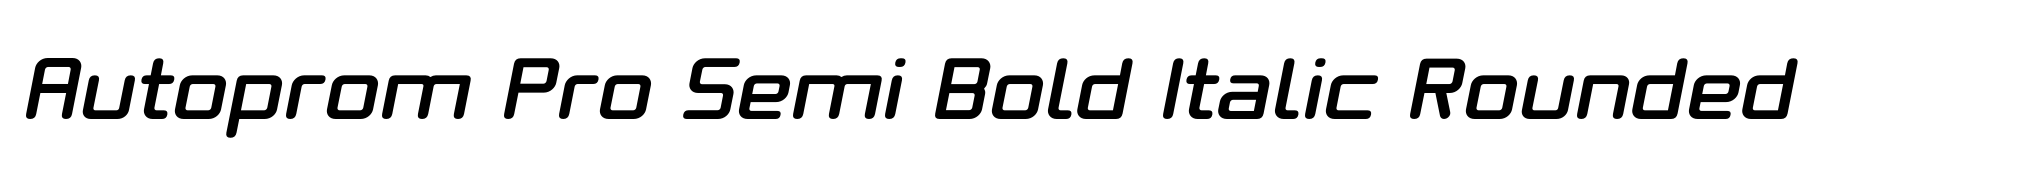 Autoprom Pro Semi Bold Italic Rounded image